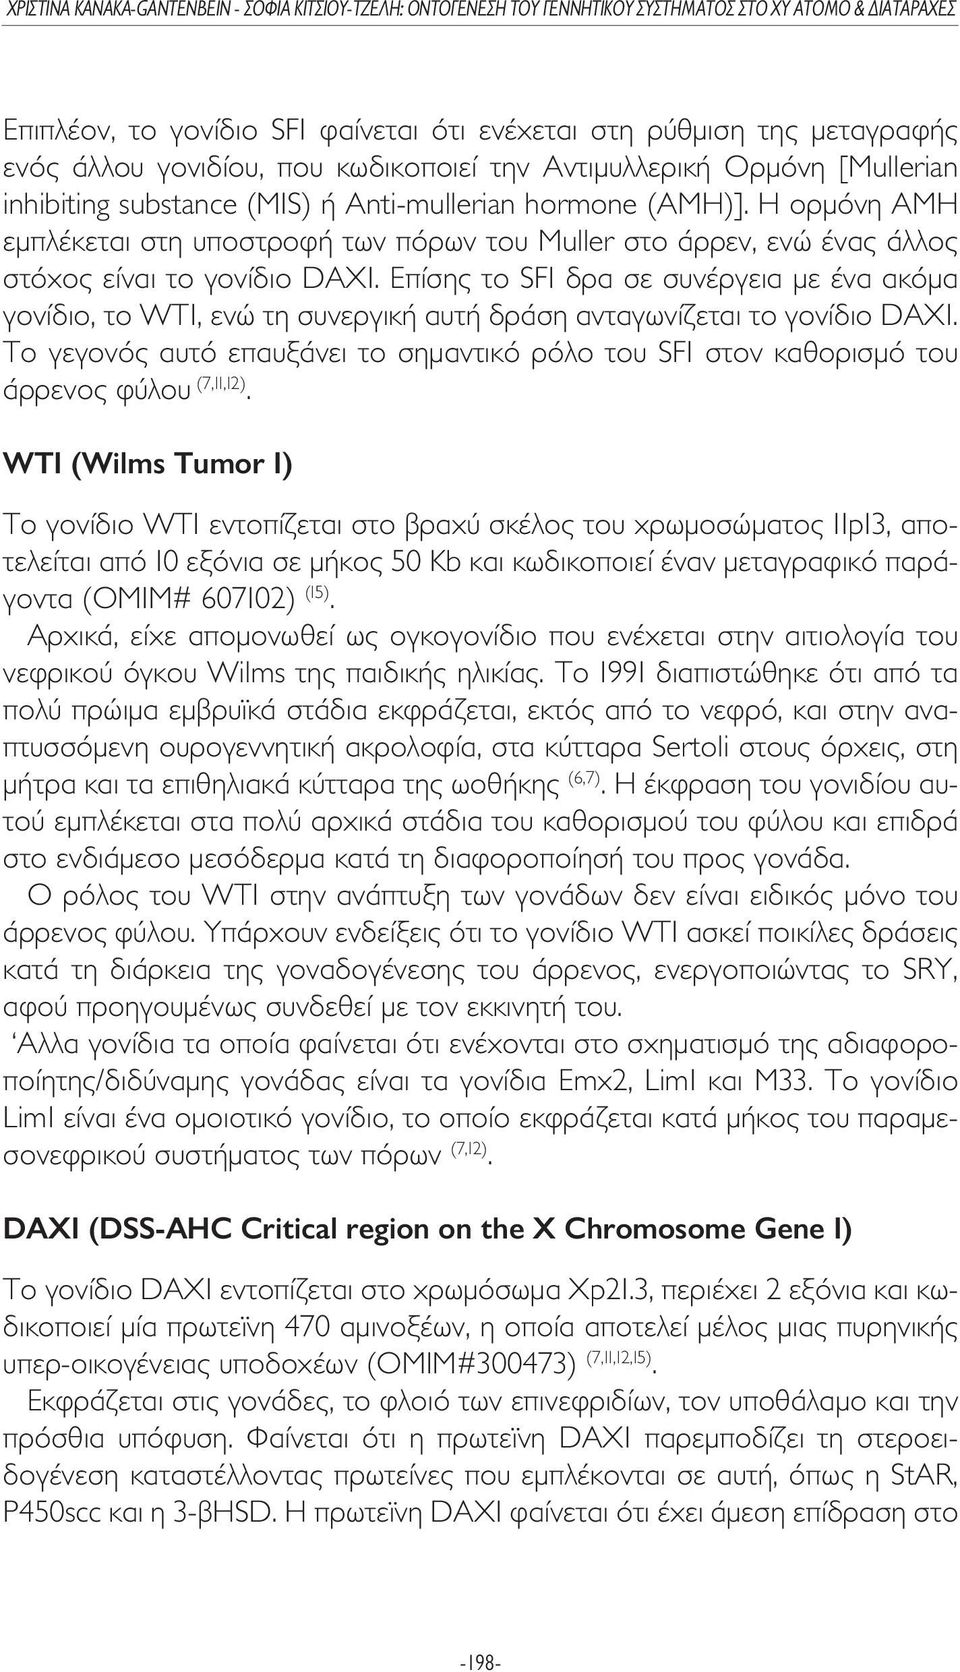 Επίσης το SF1 δρα σε συνέργεια µε ένα ακόµα γονίδιο, το WT1, ενώ τη συνεργική αυτή δράση ανταγωνίζεται το γονίδιο DAX1.